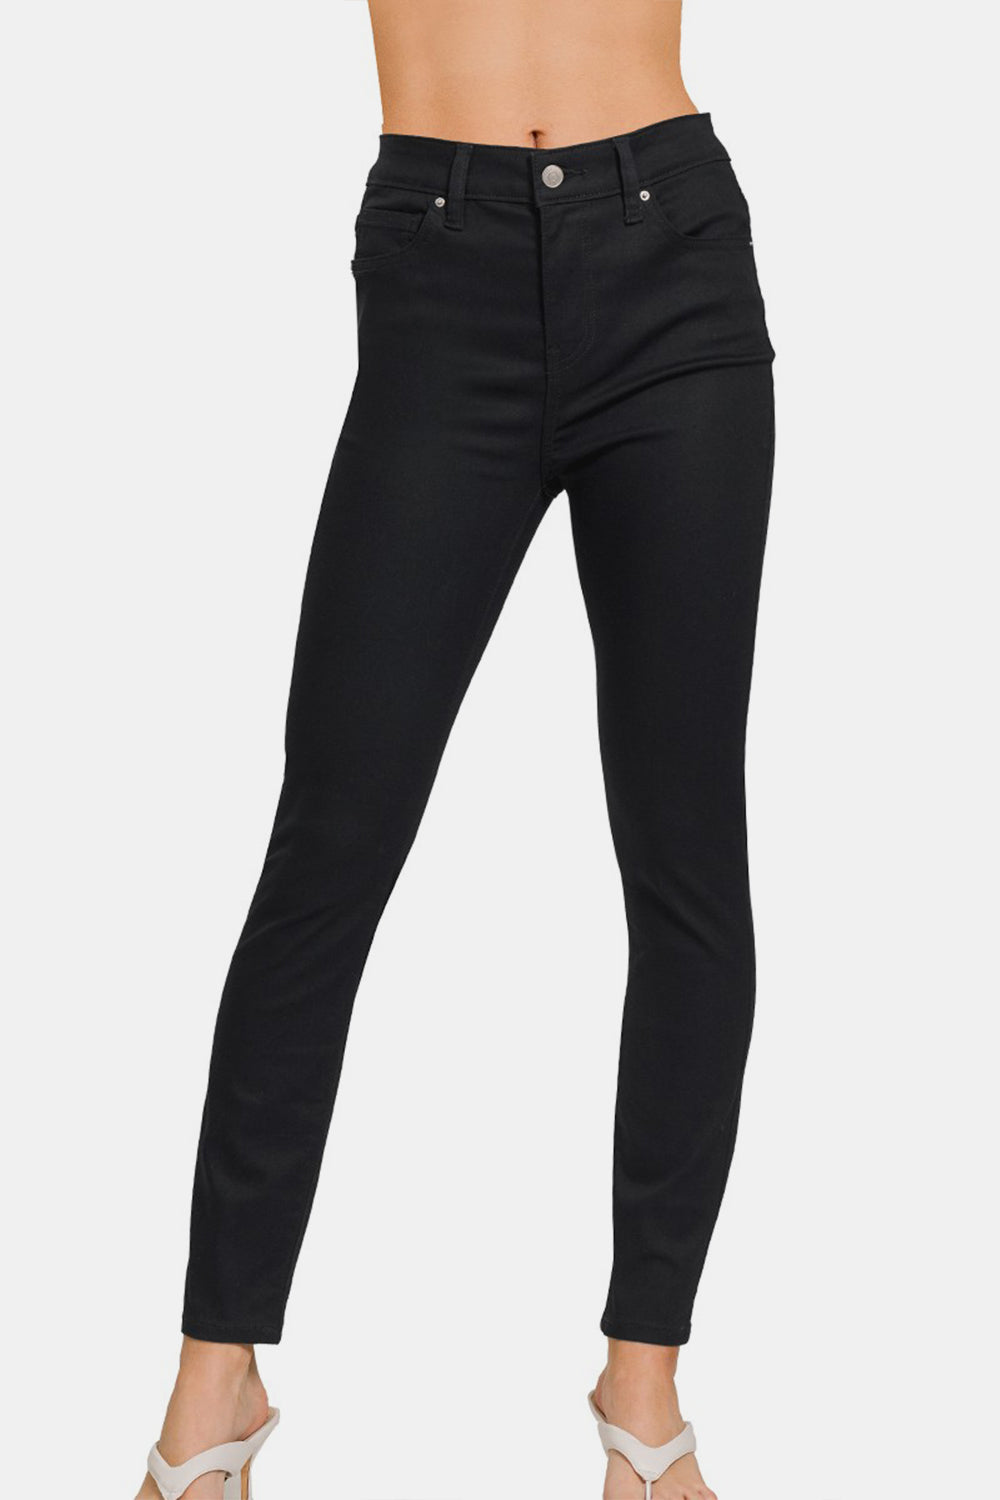 Zenana Black High-Rise Skinny Jeans Trendsi